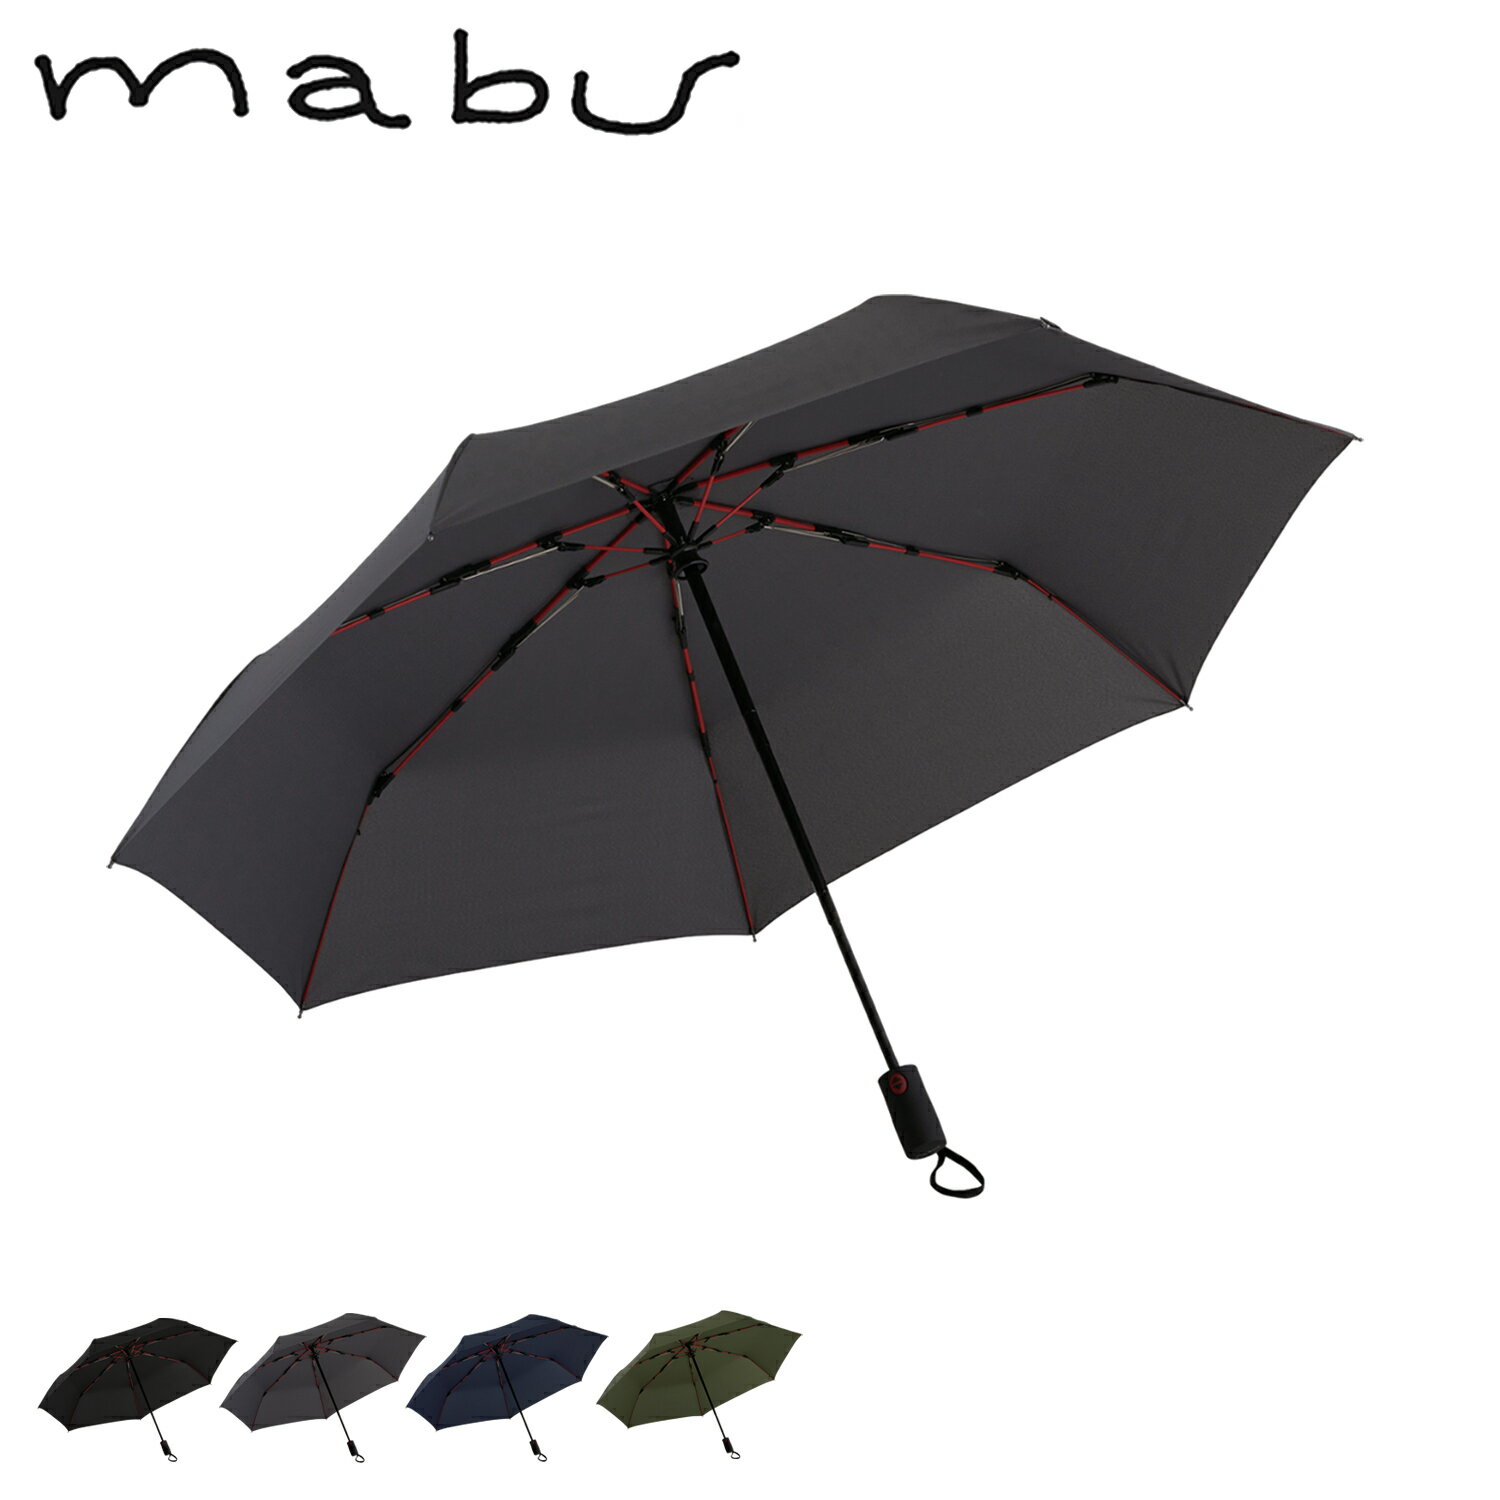 マブ 折りたたみ傘 メンズ mabu マブ 折りたたみ傘 雨傘 晴雨兼用 軽量 メンズ レディース 60cm ブラック グレー ネイビー カーキ 黒 SMV-4180 母の日